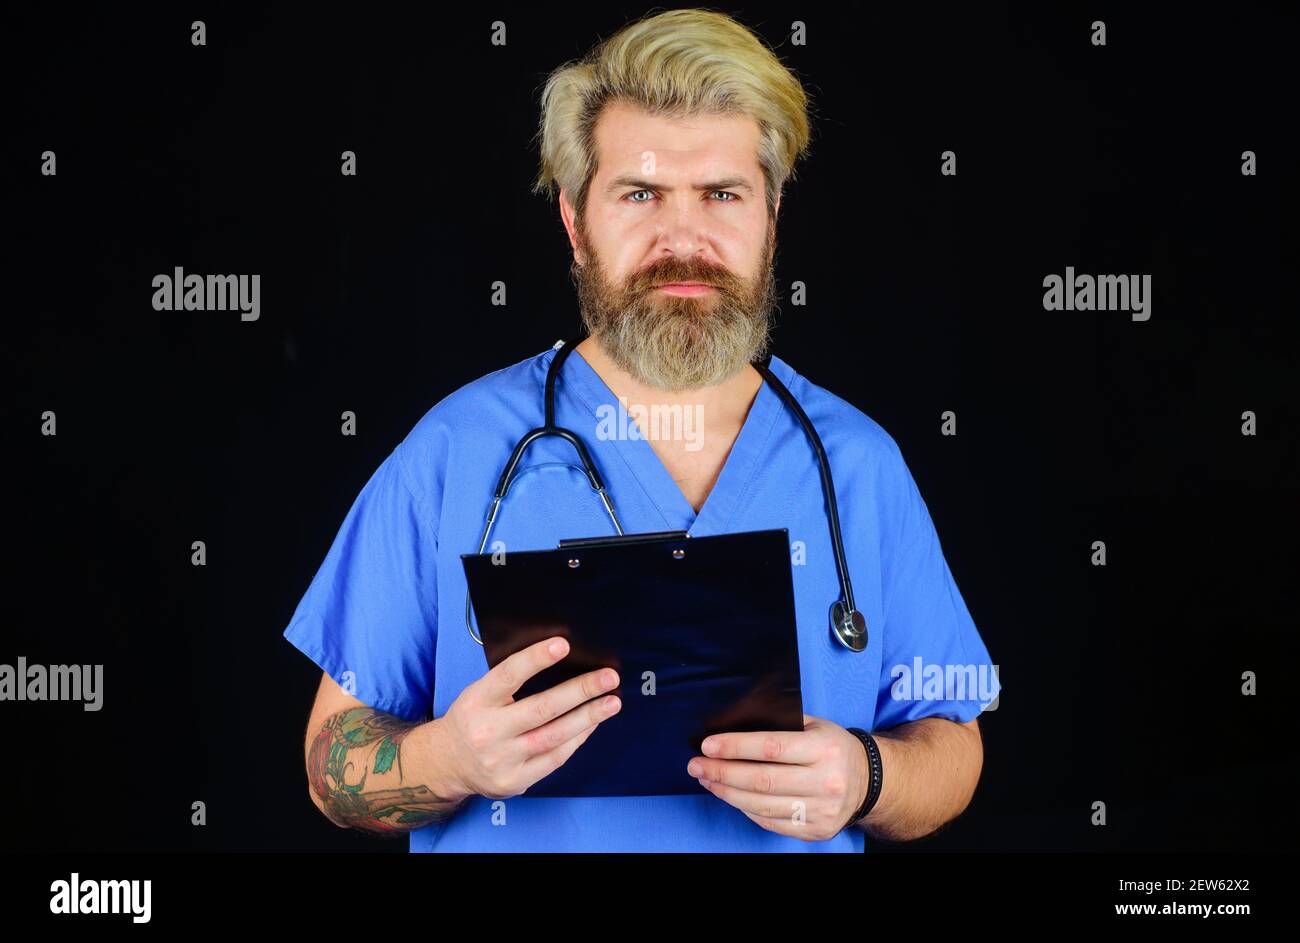 Medico con appunti. Medico maschile in uniforme medica con documenti. Concetto di sanità e medicina. Foto Stock